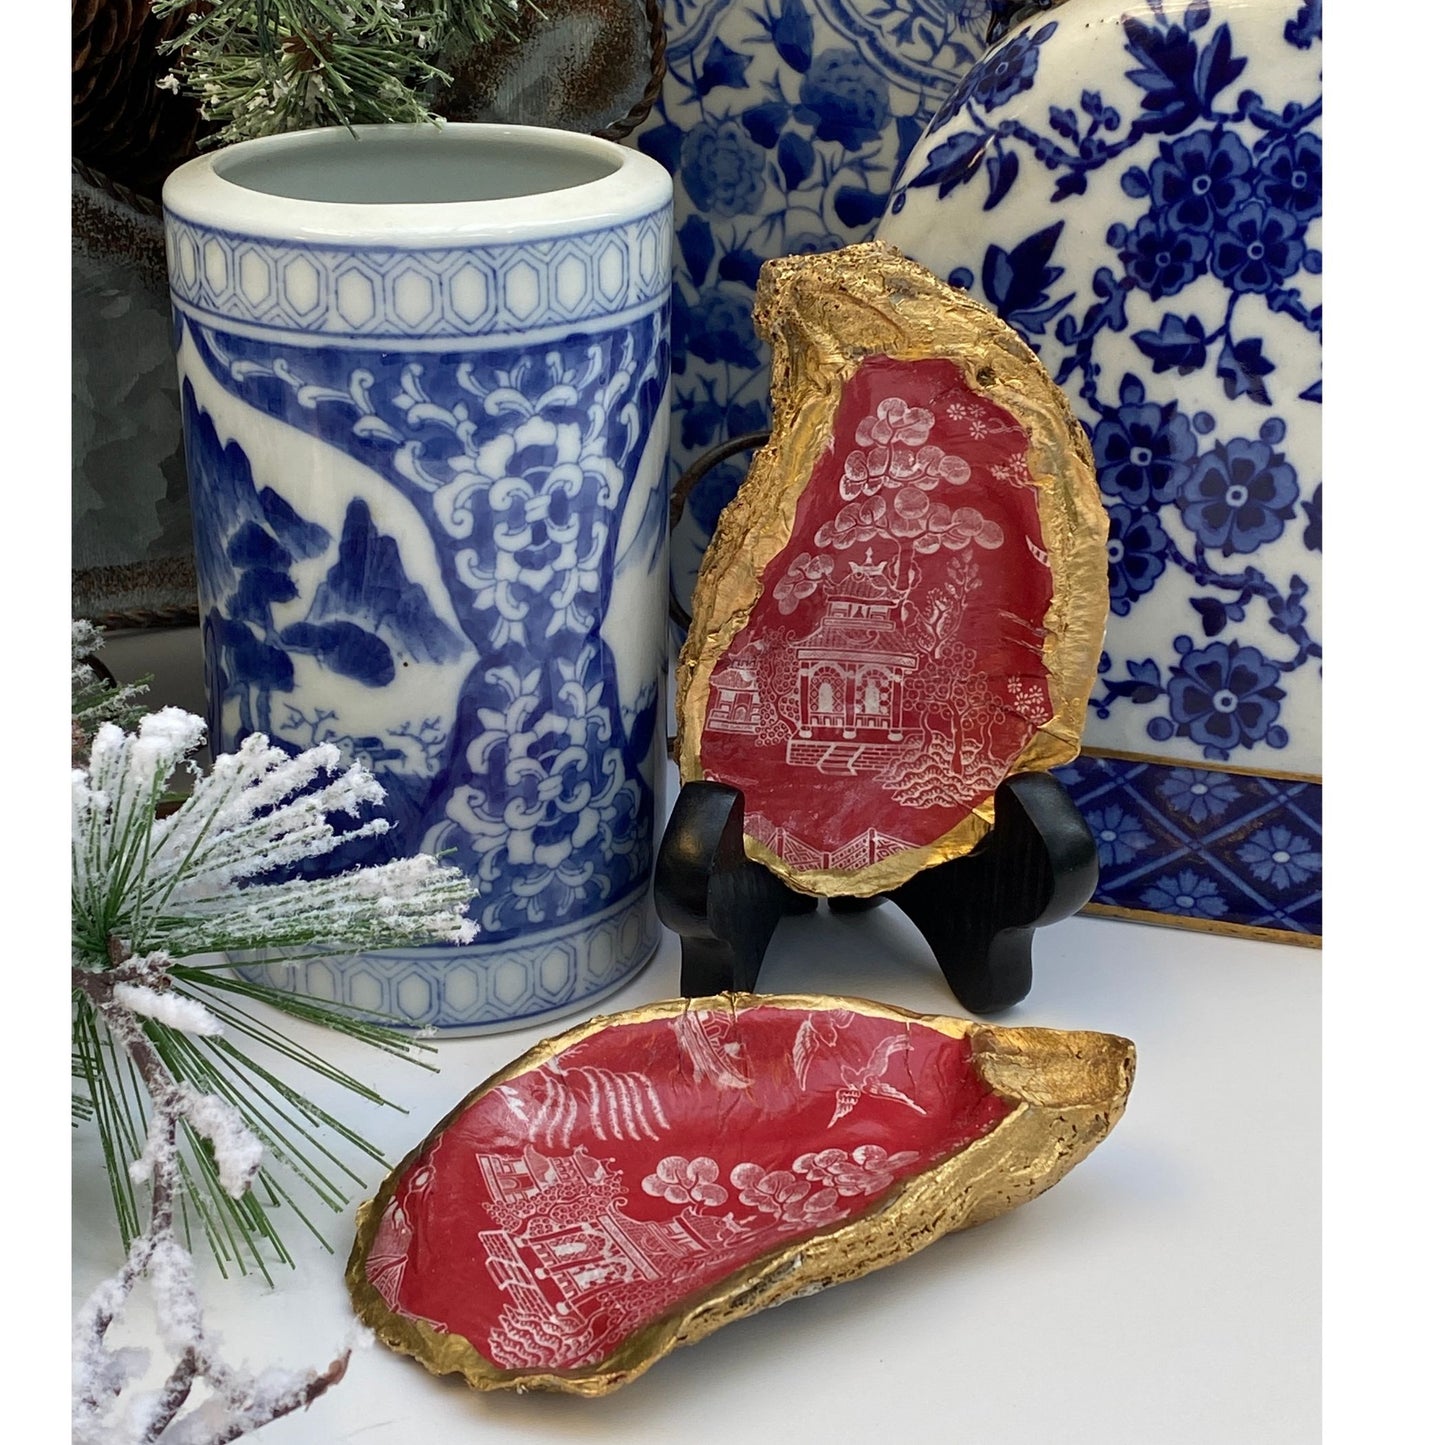 Red Chinoiserie Art, Oyster Shell Art, Handmade